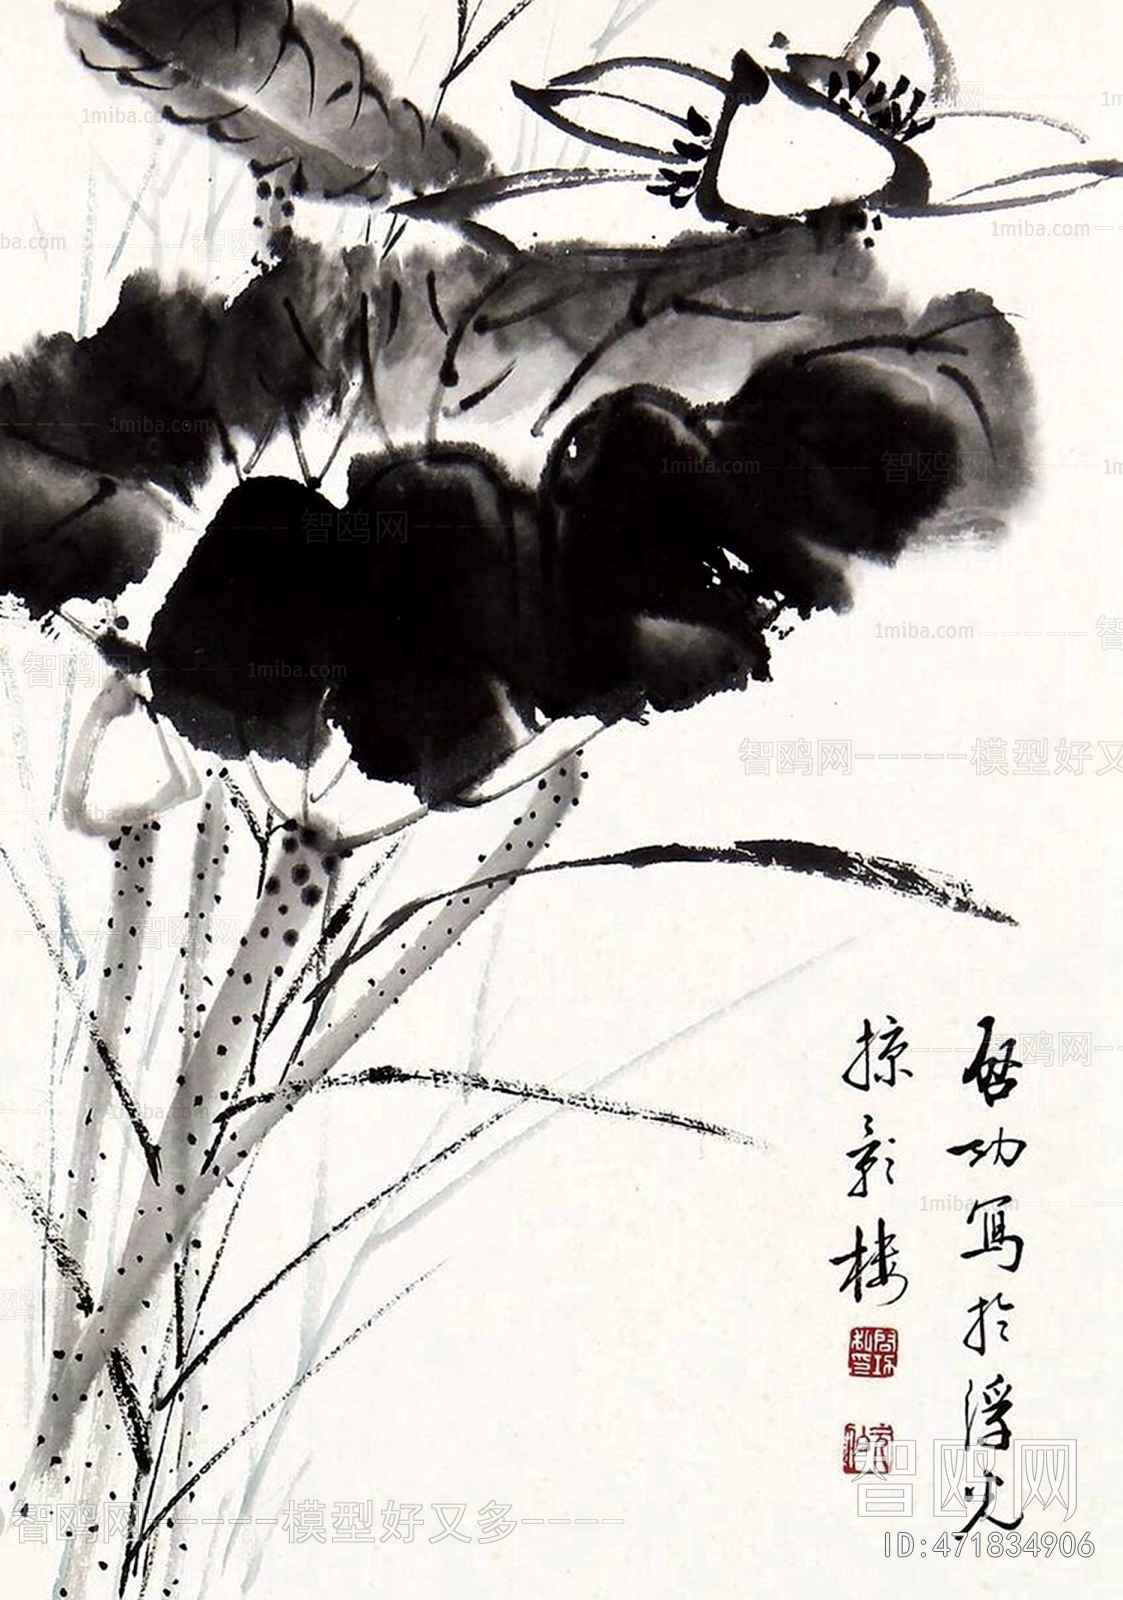 中式写意国画花卉挂画